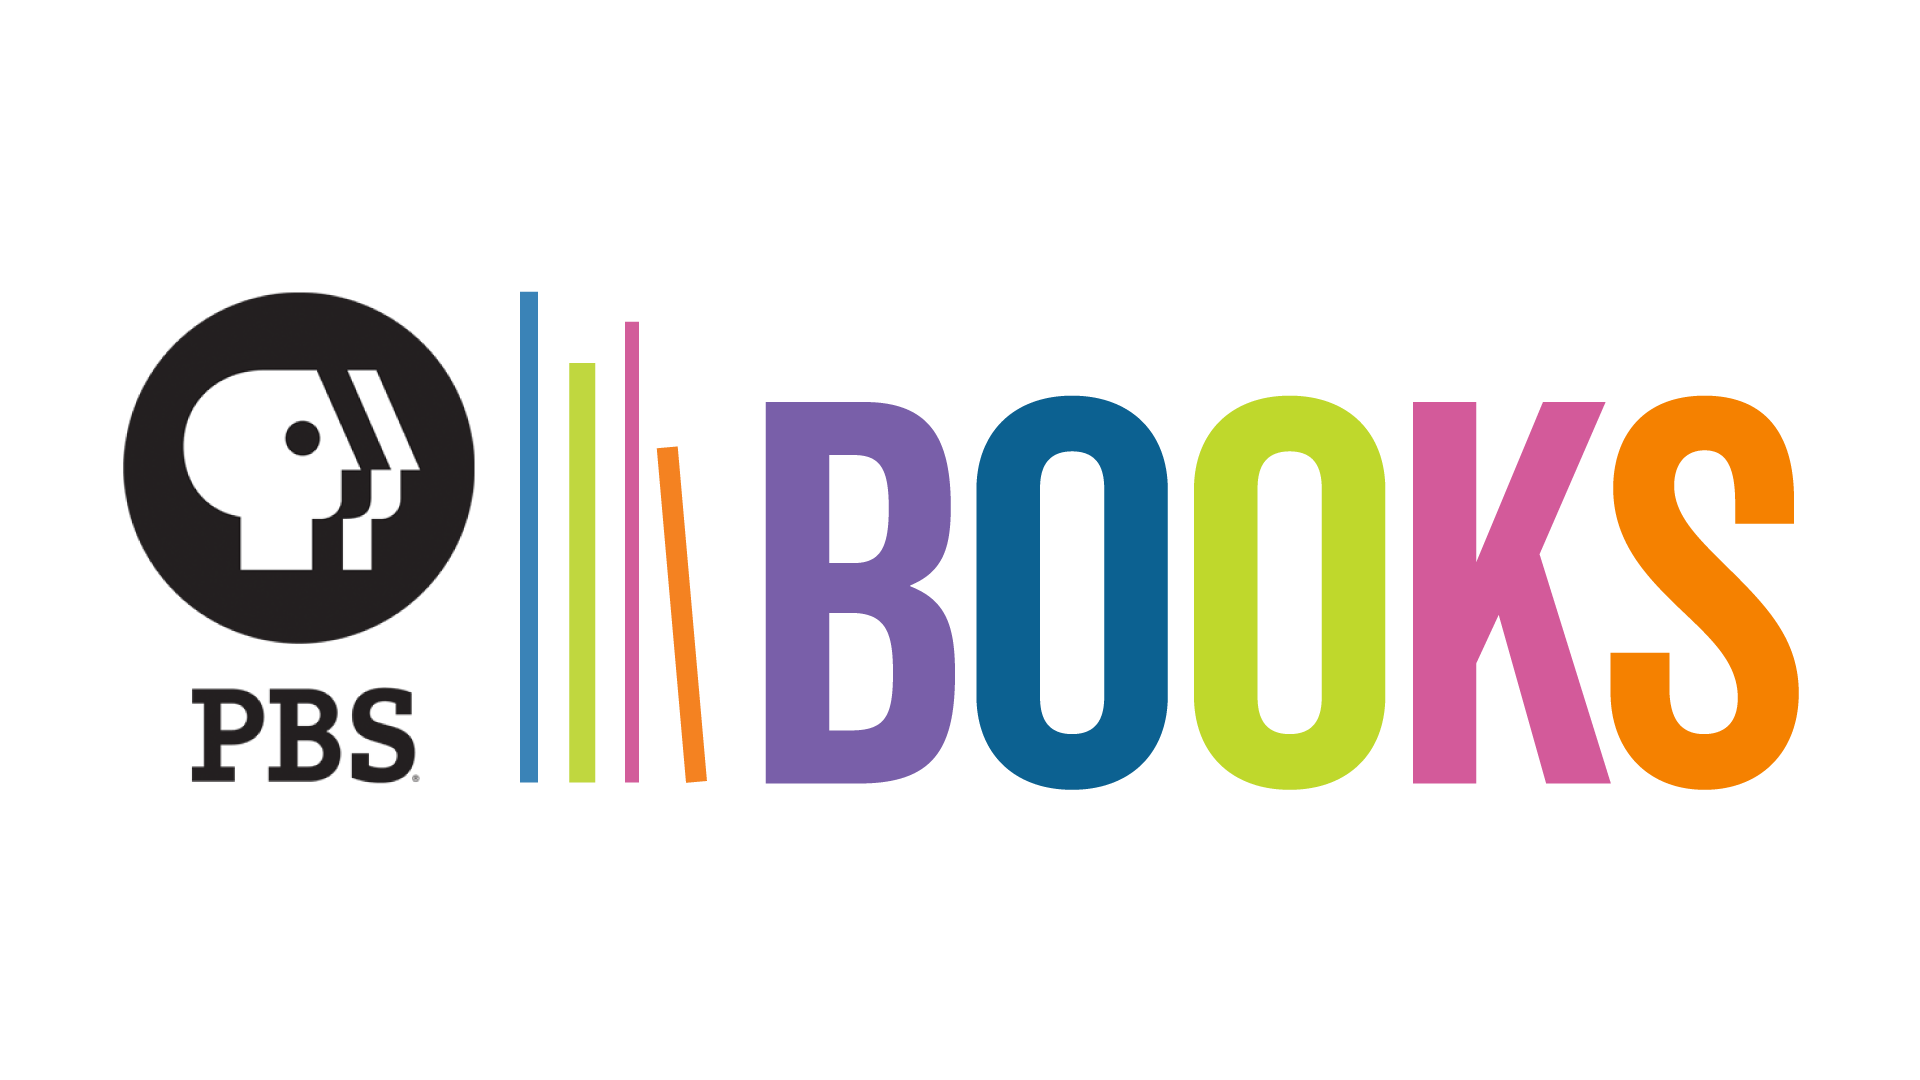 PBS Books logo